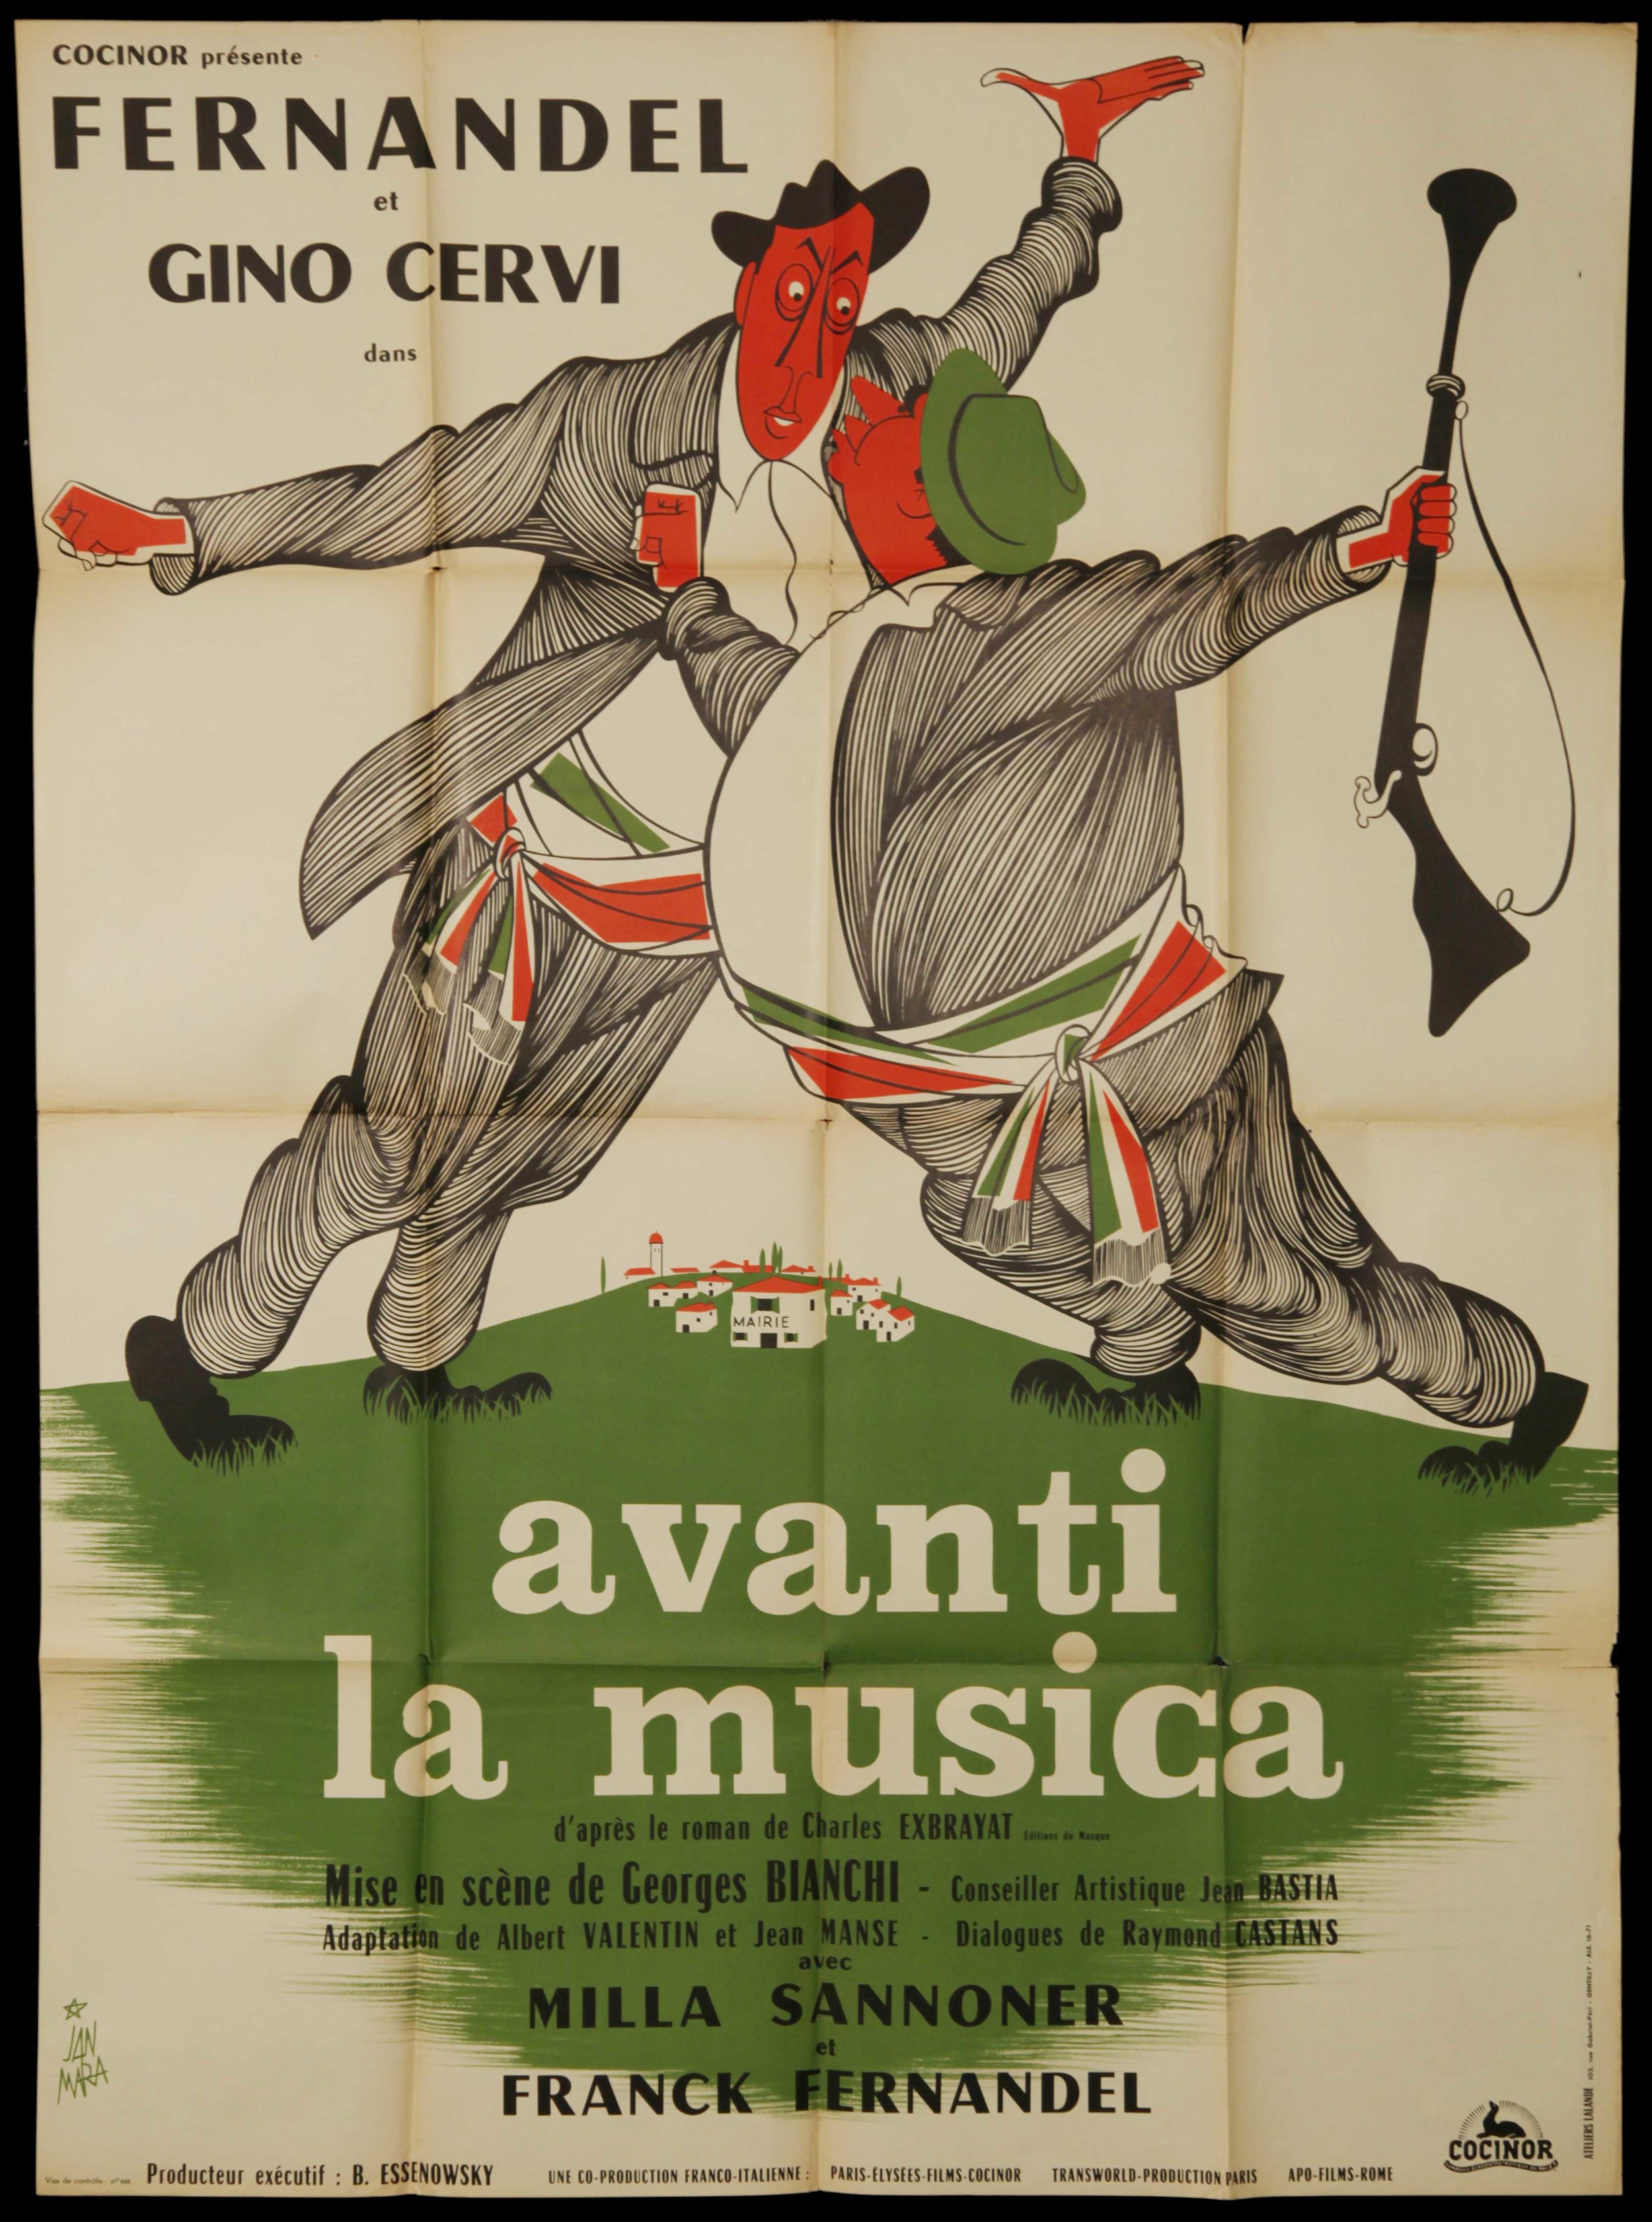 Fernadel in "Avanti La Musica" (1962)